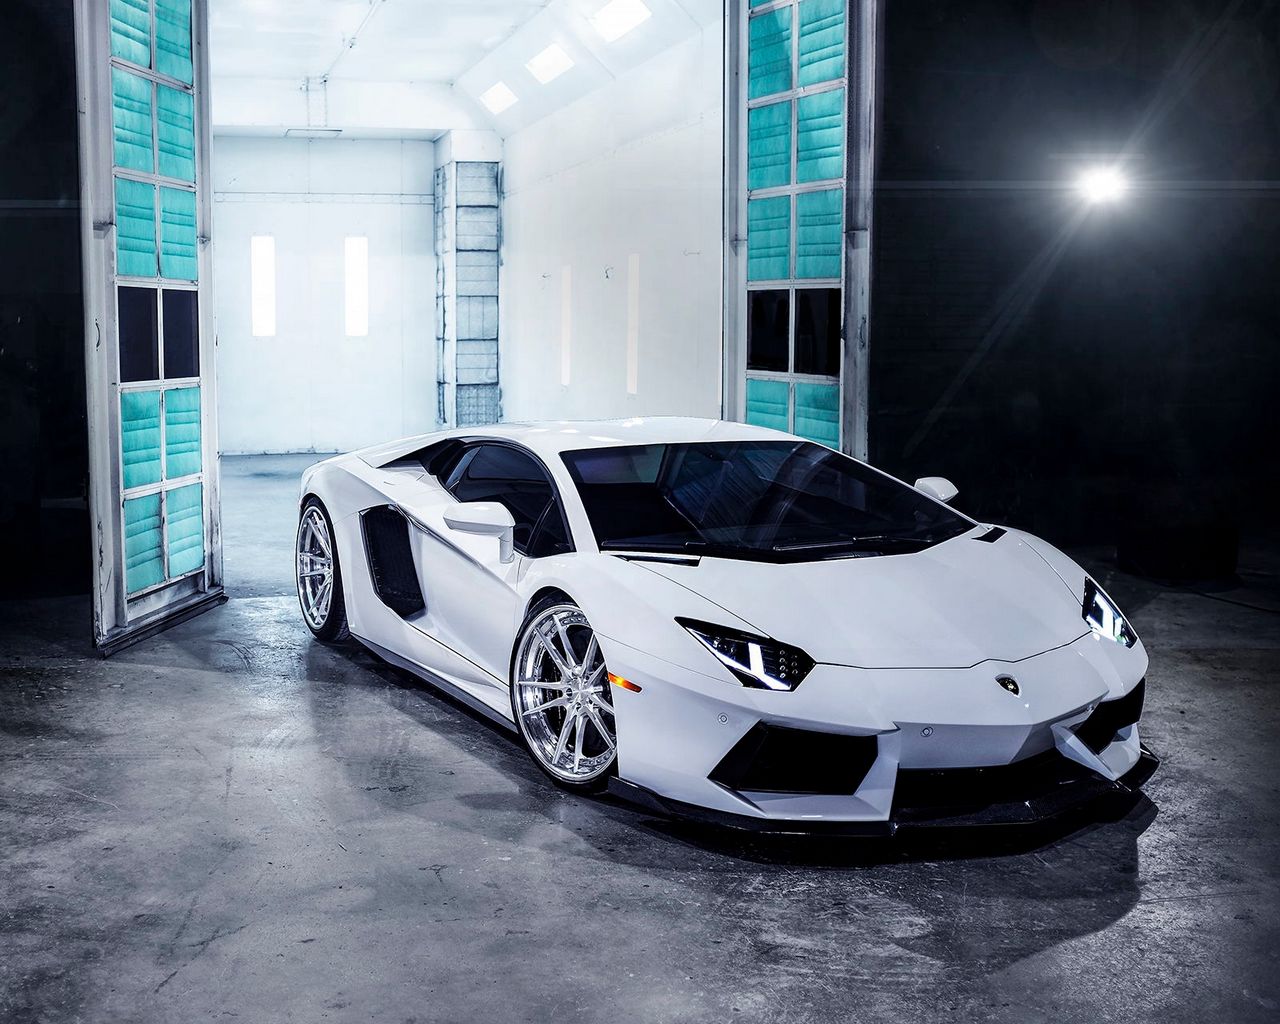 Hình nền Lamborghini sẽ khiến bạn trải nghiệm những cung đường Mỹ phẩm đầy thú vị. Bạn sẽ có cơ hội thấy một trong những thương hiệu ô tô huyền thoại được biết đến trên toàn thế giới và tận hưởng vẻ đẹp hoàn hảo của chiếc xe đỉnh cao này.